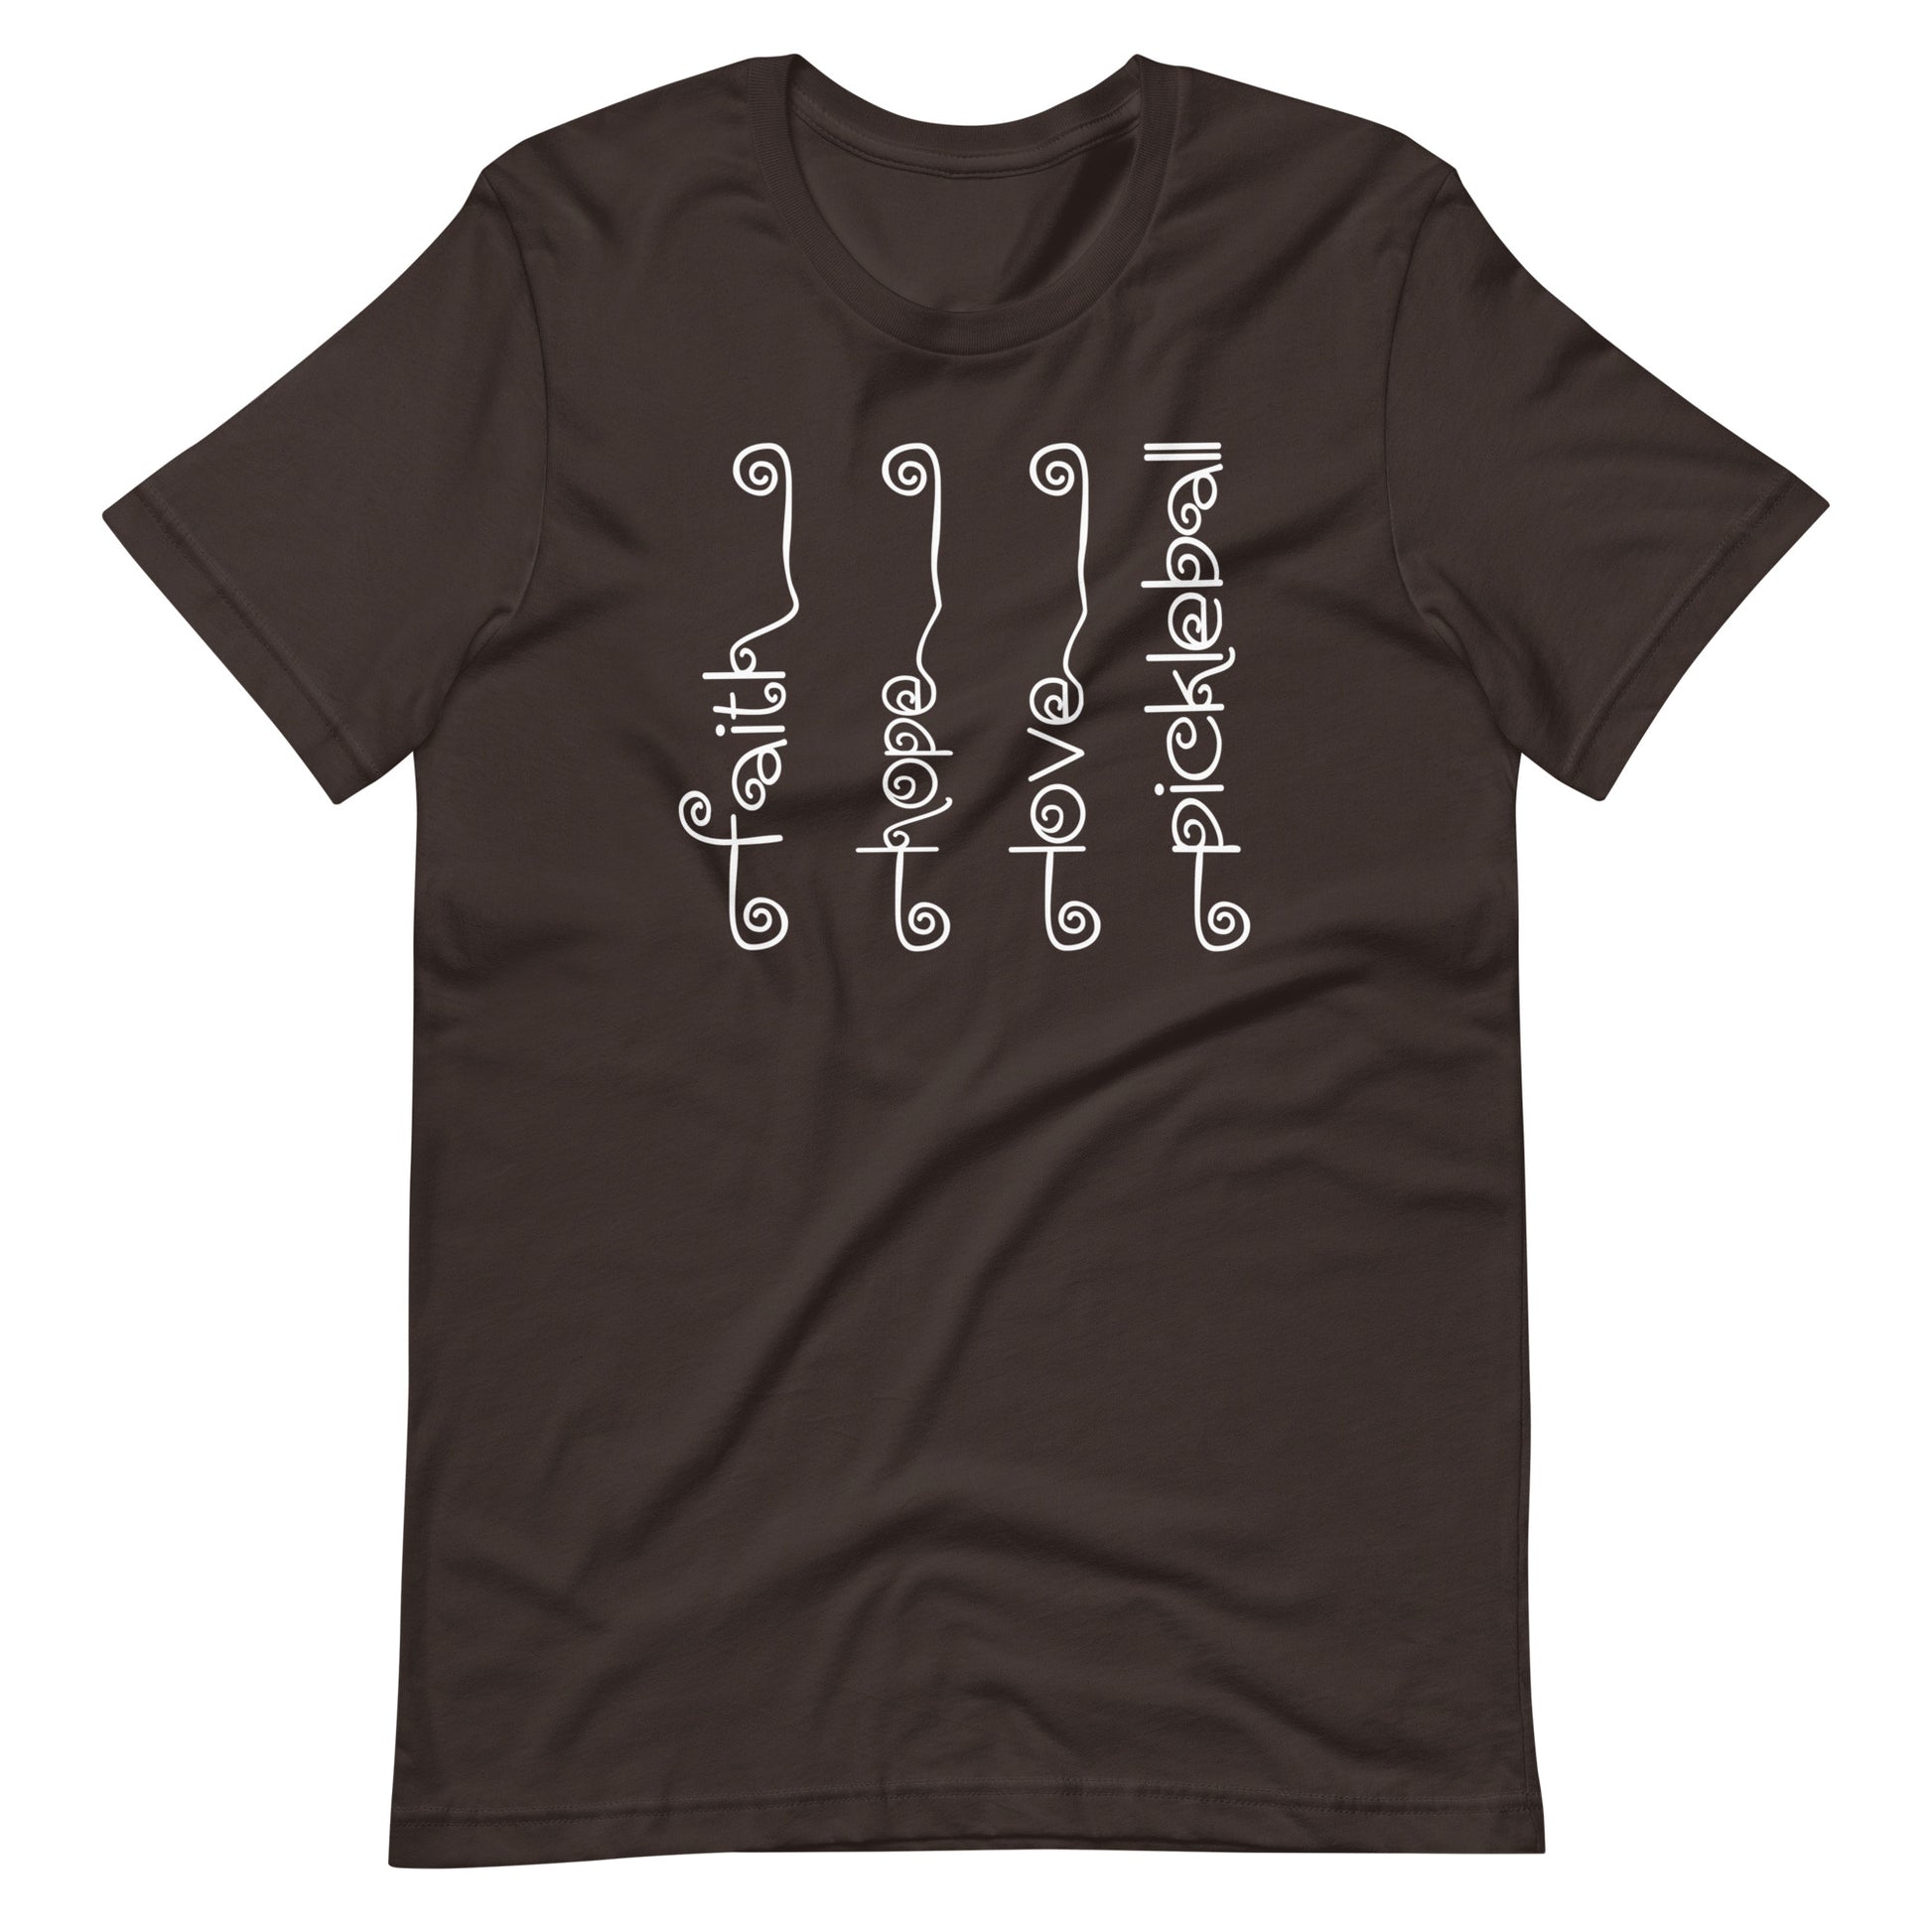 Fun Pickleball Pun: "Faith, Hope, Love, Pickleball", Womens Brown Unisex T-Shirt